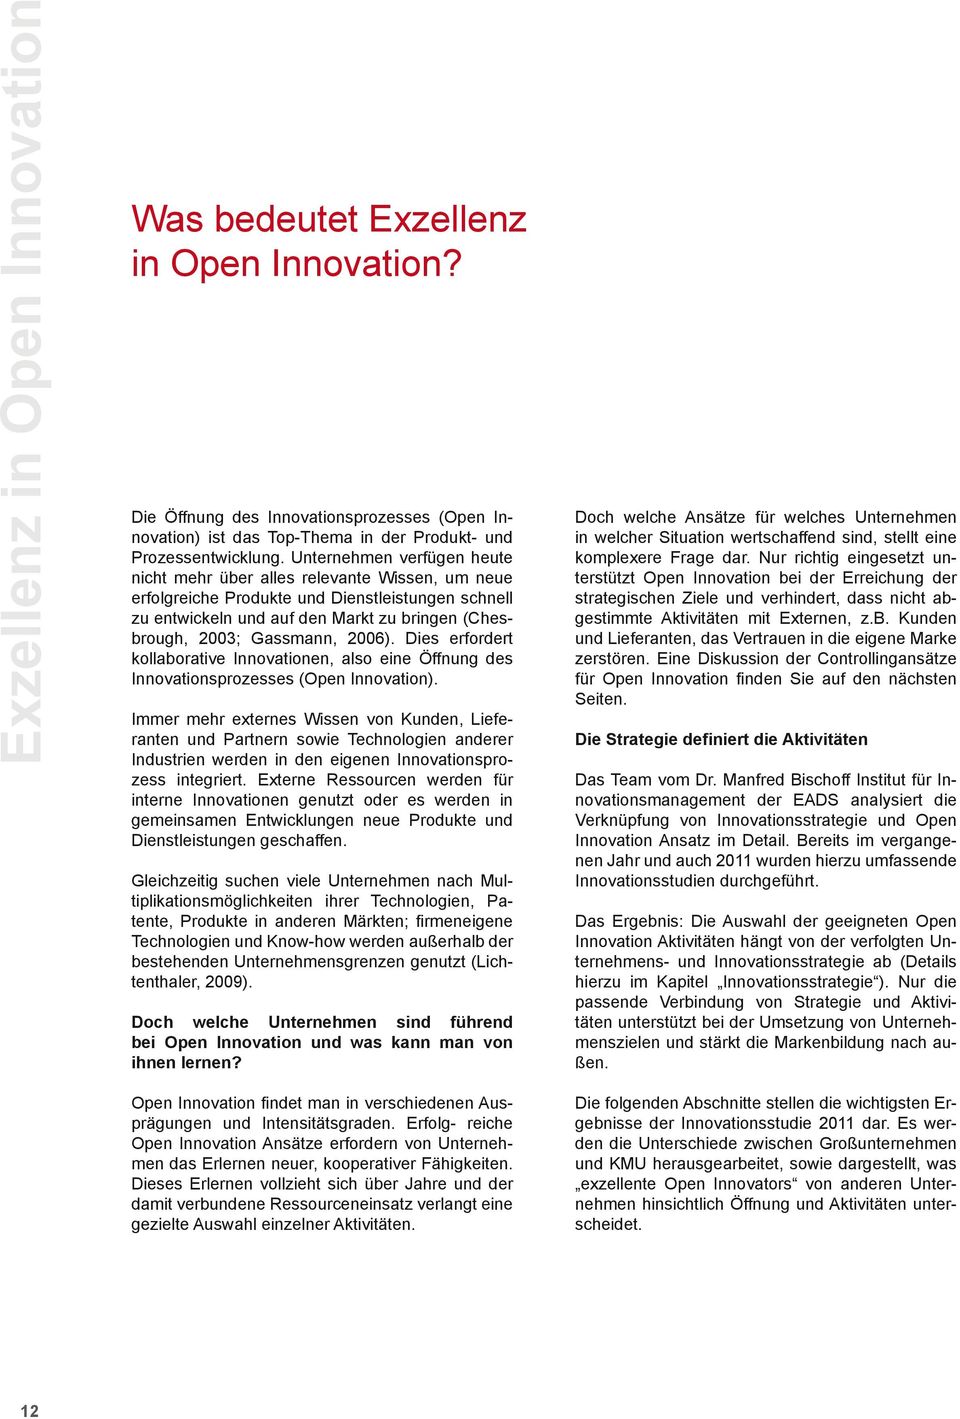 2006). Dies erfordert kollaborative Innovationen, also eine Öffnung des Innovationsprozesses (Open Innovation).